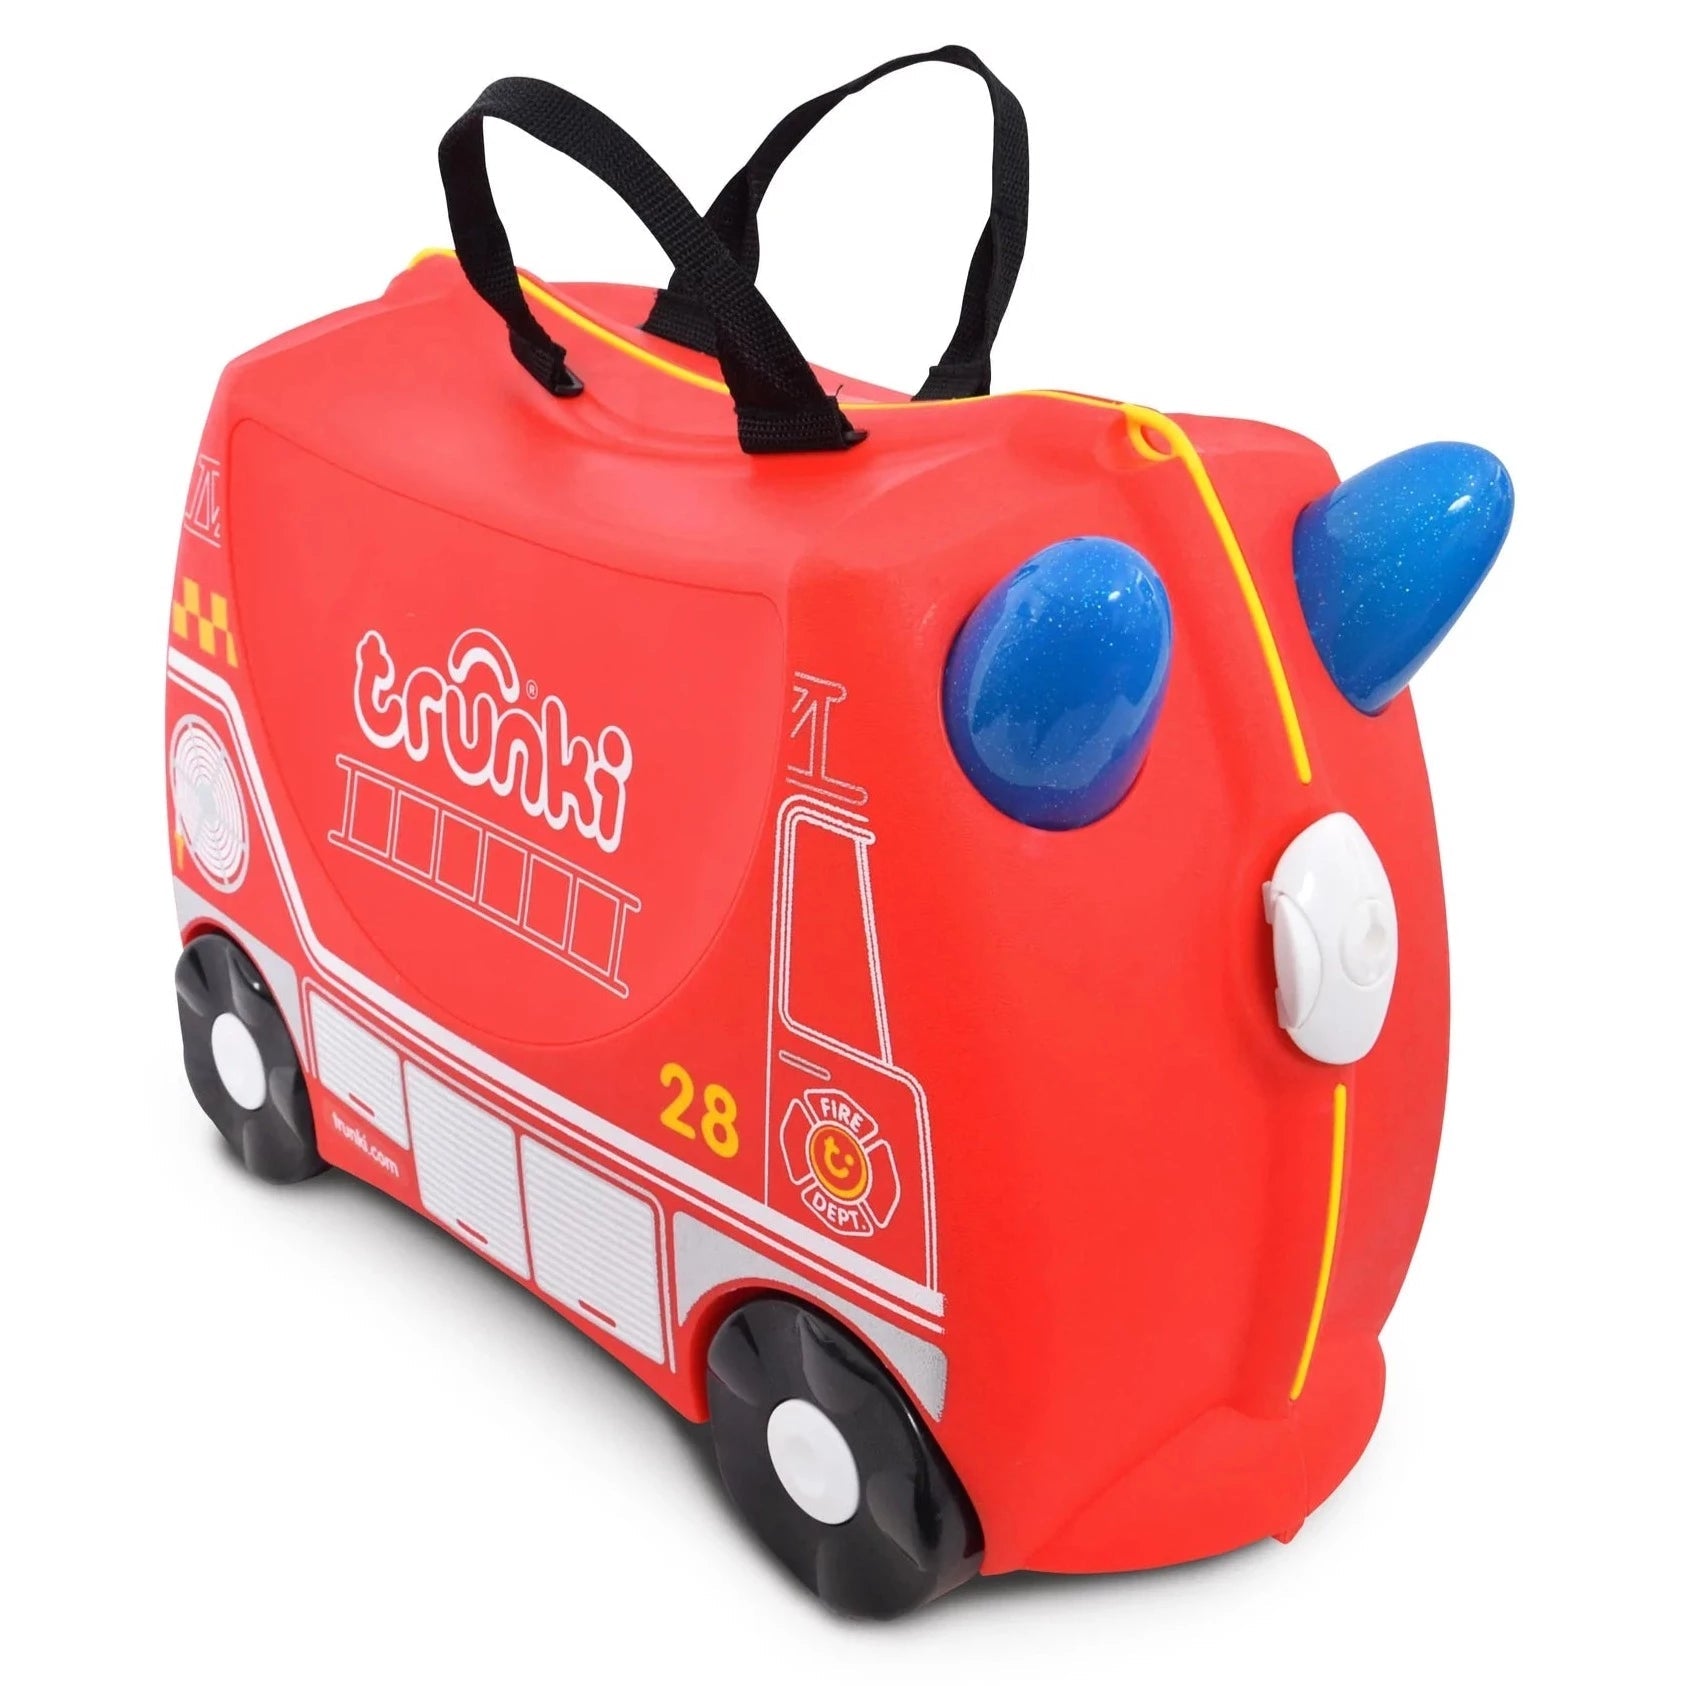 Trunki: jeżdżąca walizka dla dzieci wóz strażacki Frank - Noski Noski